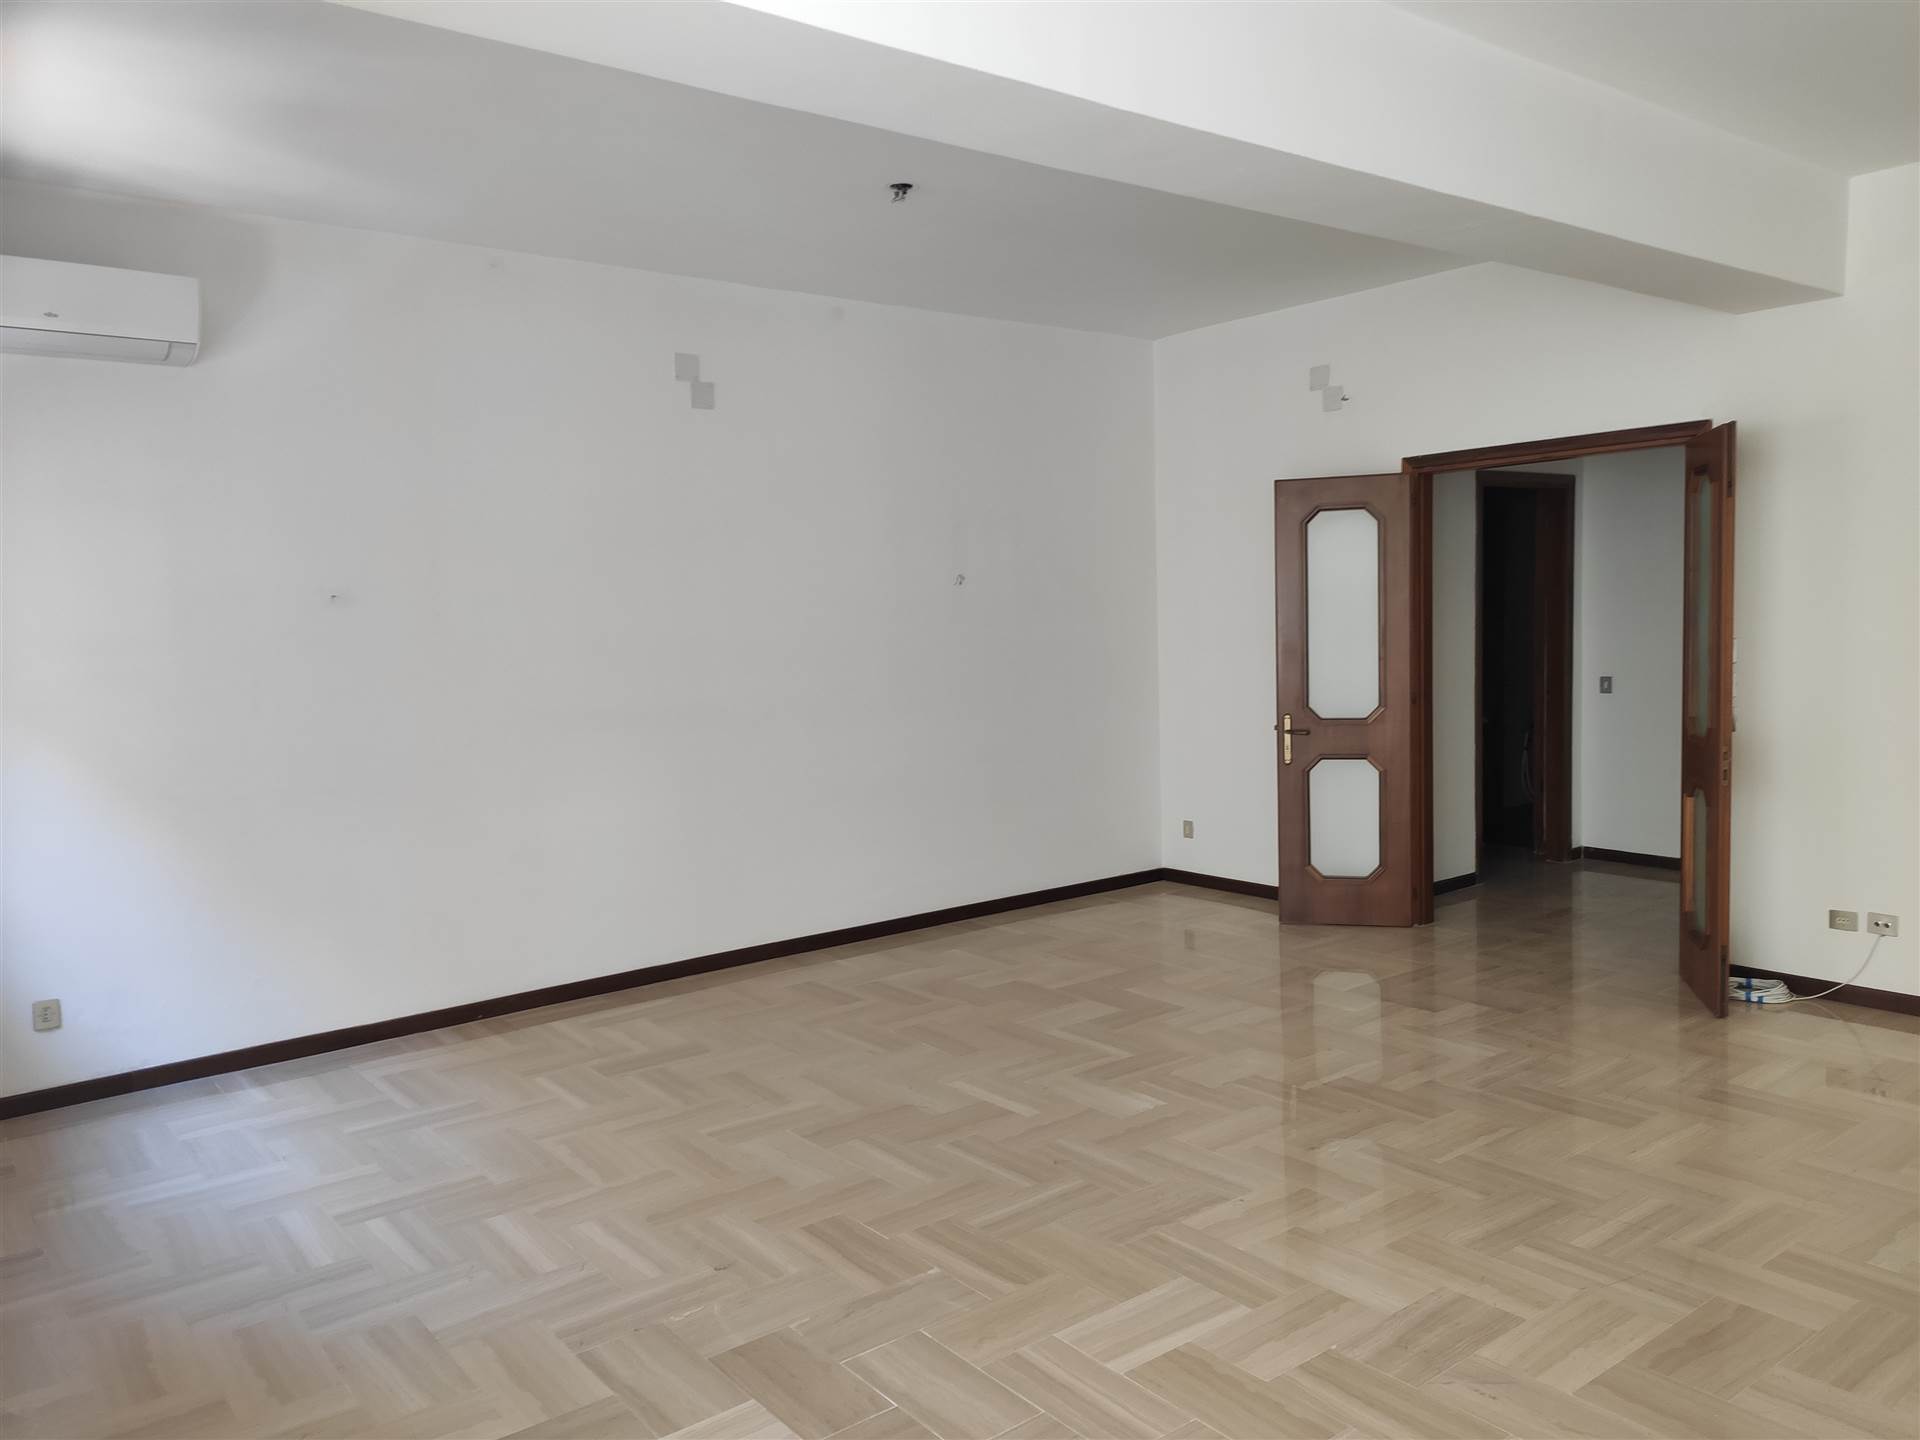 Appartamento in affitto a Siracusa, 5 locali, zona Località: ADDA, prezzo € 750 | PortaleAgenzieImmobiliari.it